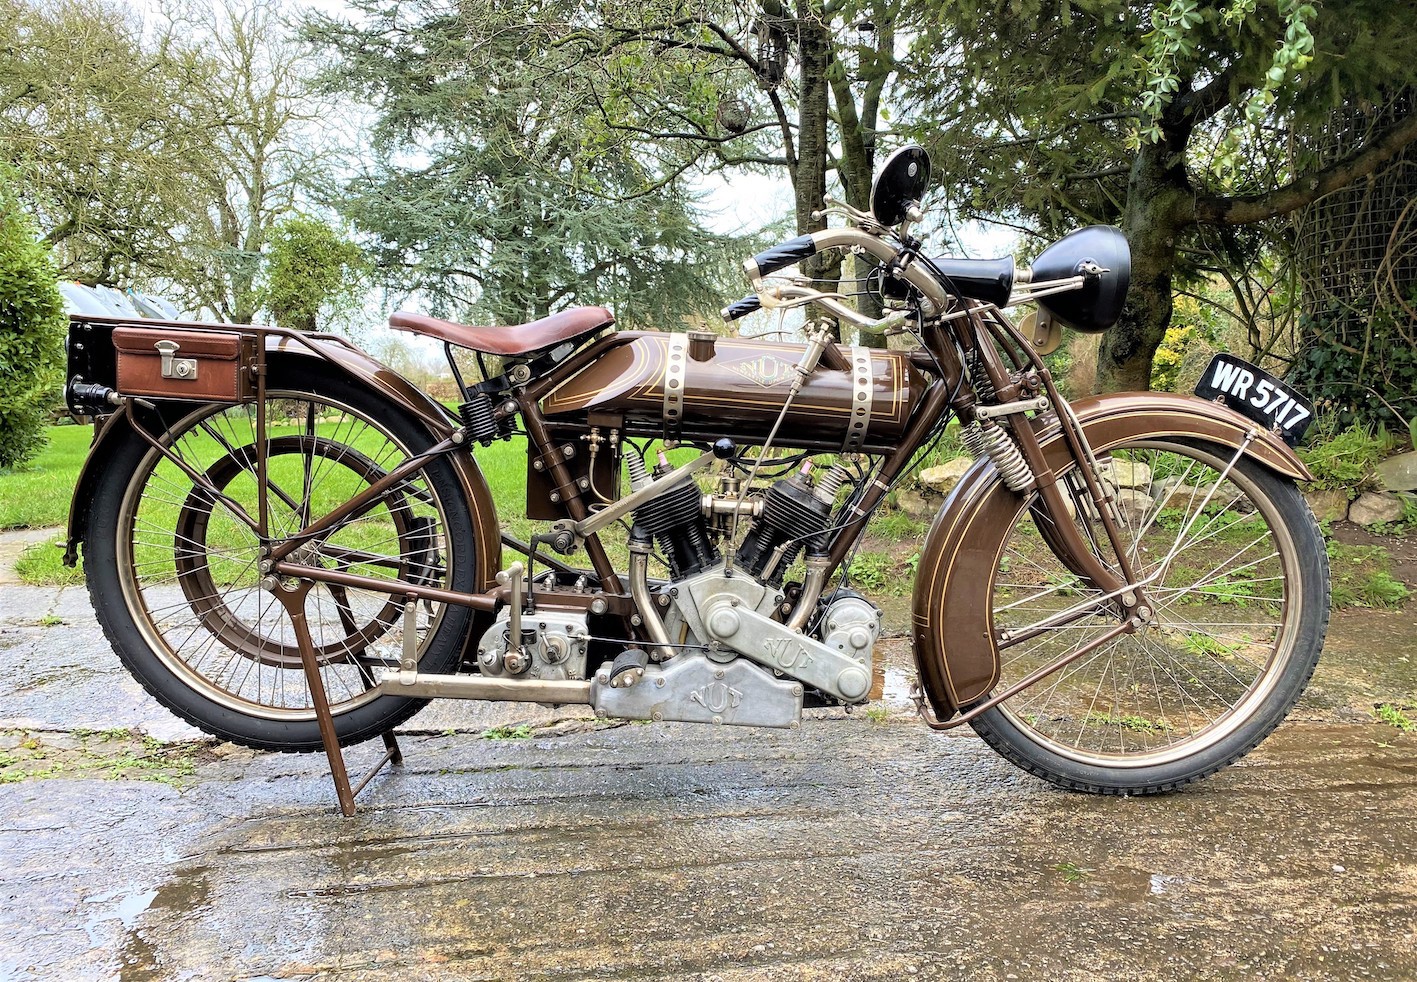 1920 Nut Model TT Motocycle